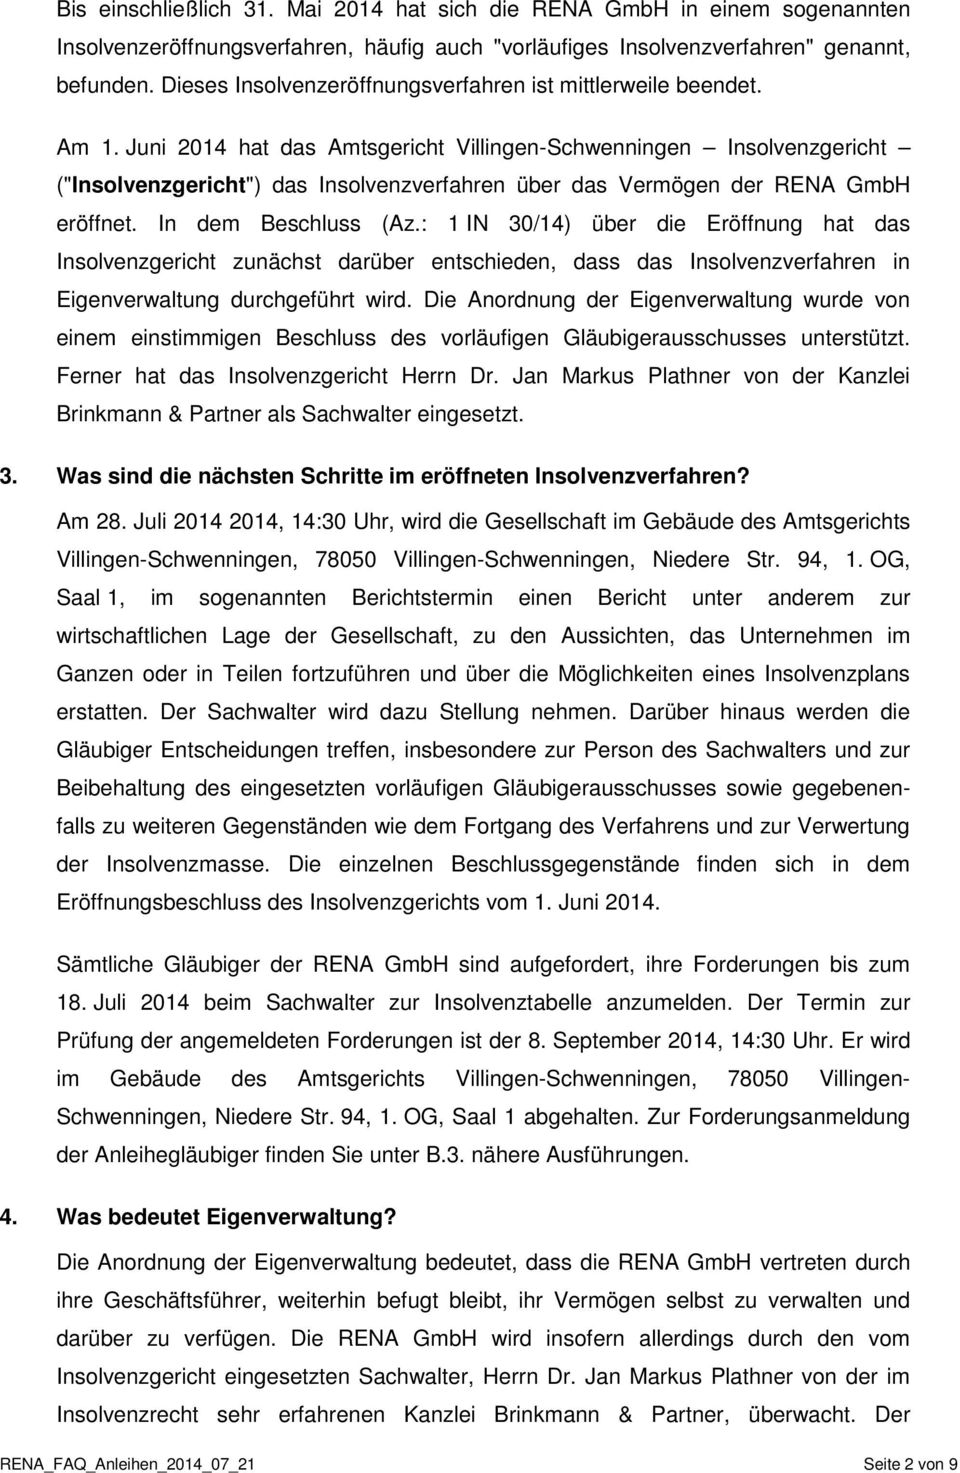 Juni 2014 hat das Amtsgericht Villingen-Schwenningen Insolvenzgericht ("Insolvenzgericht") das Insolvenzverfahren über das Vermögen der RENA GmbH eröffnet. In dem Beschluss (Az.